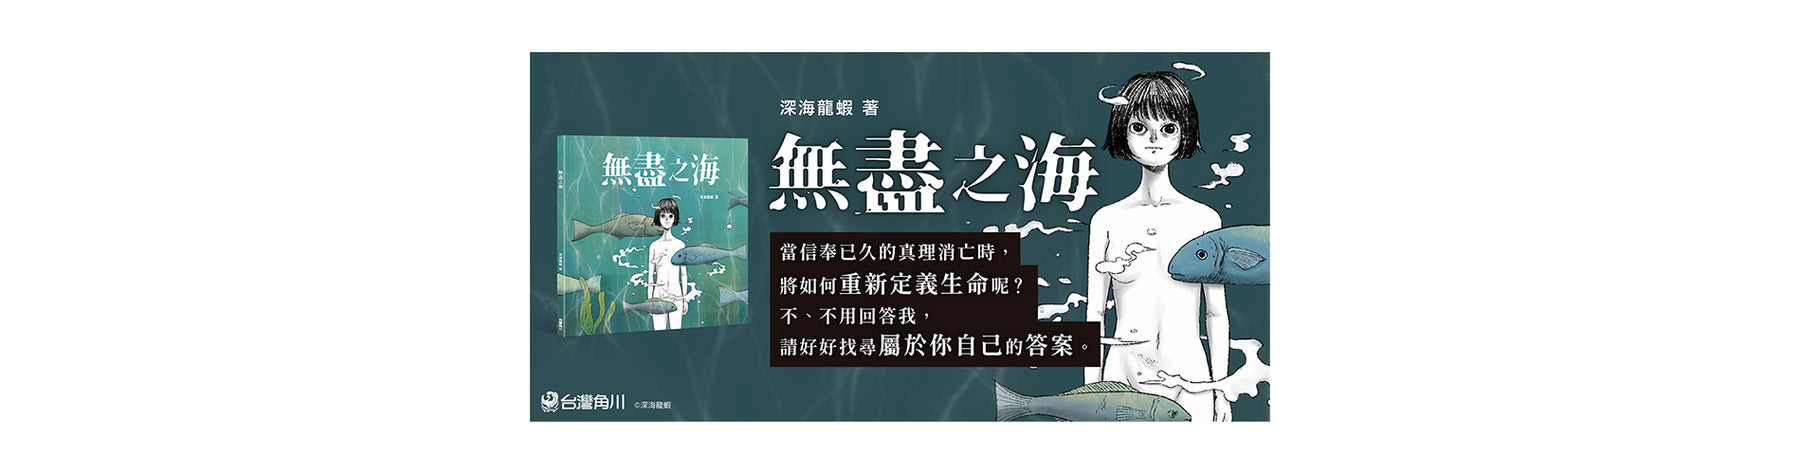 新銳台灣創作者──深海龍蝦帶來靈魂拷問般引人深思的成人插畫繪本。 當察覺人類在時間長河中的渺小，是否更有勇氣坦然面對？ 《無盡之海》 6/22 網路＆實體通路同步發售！